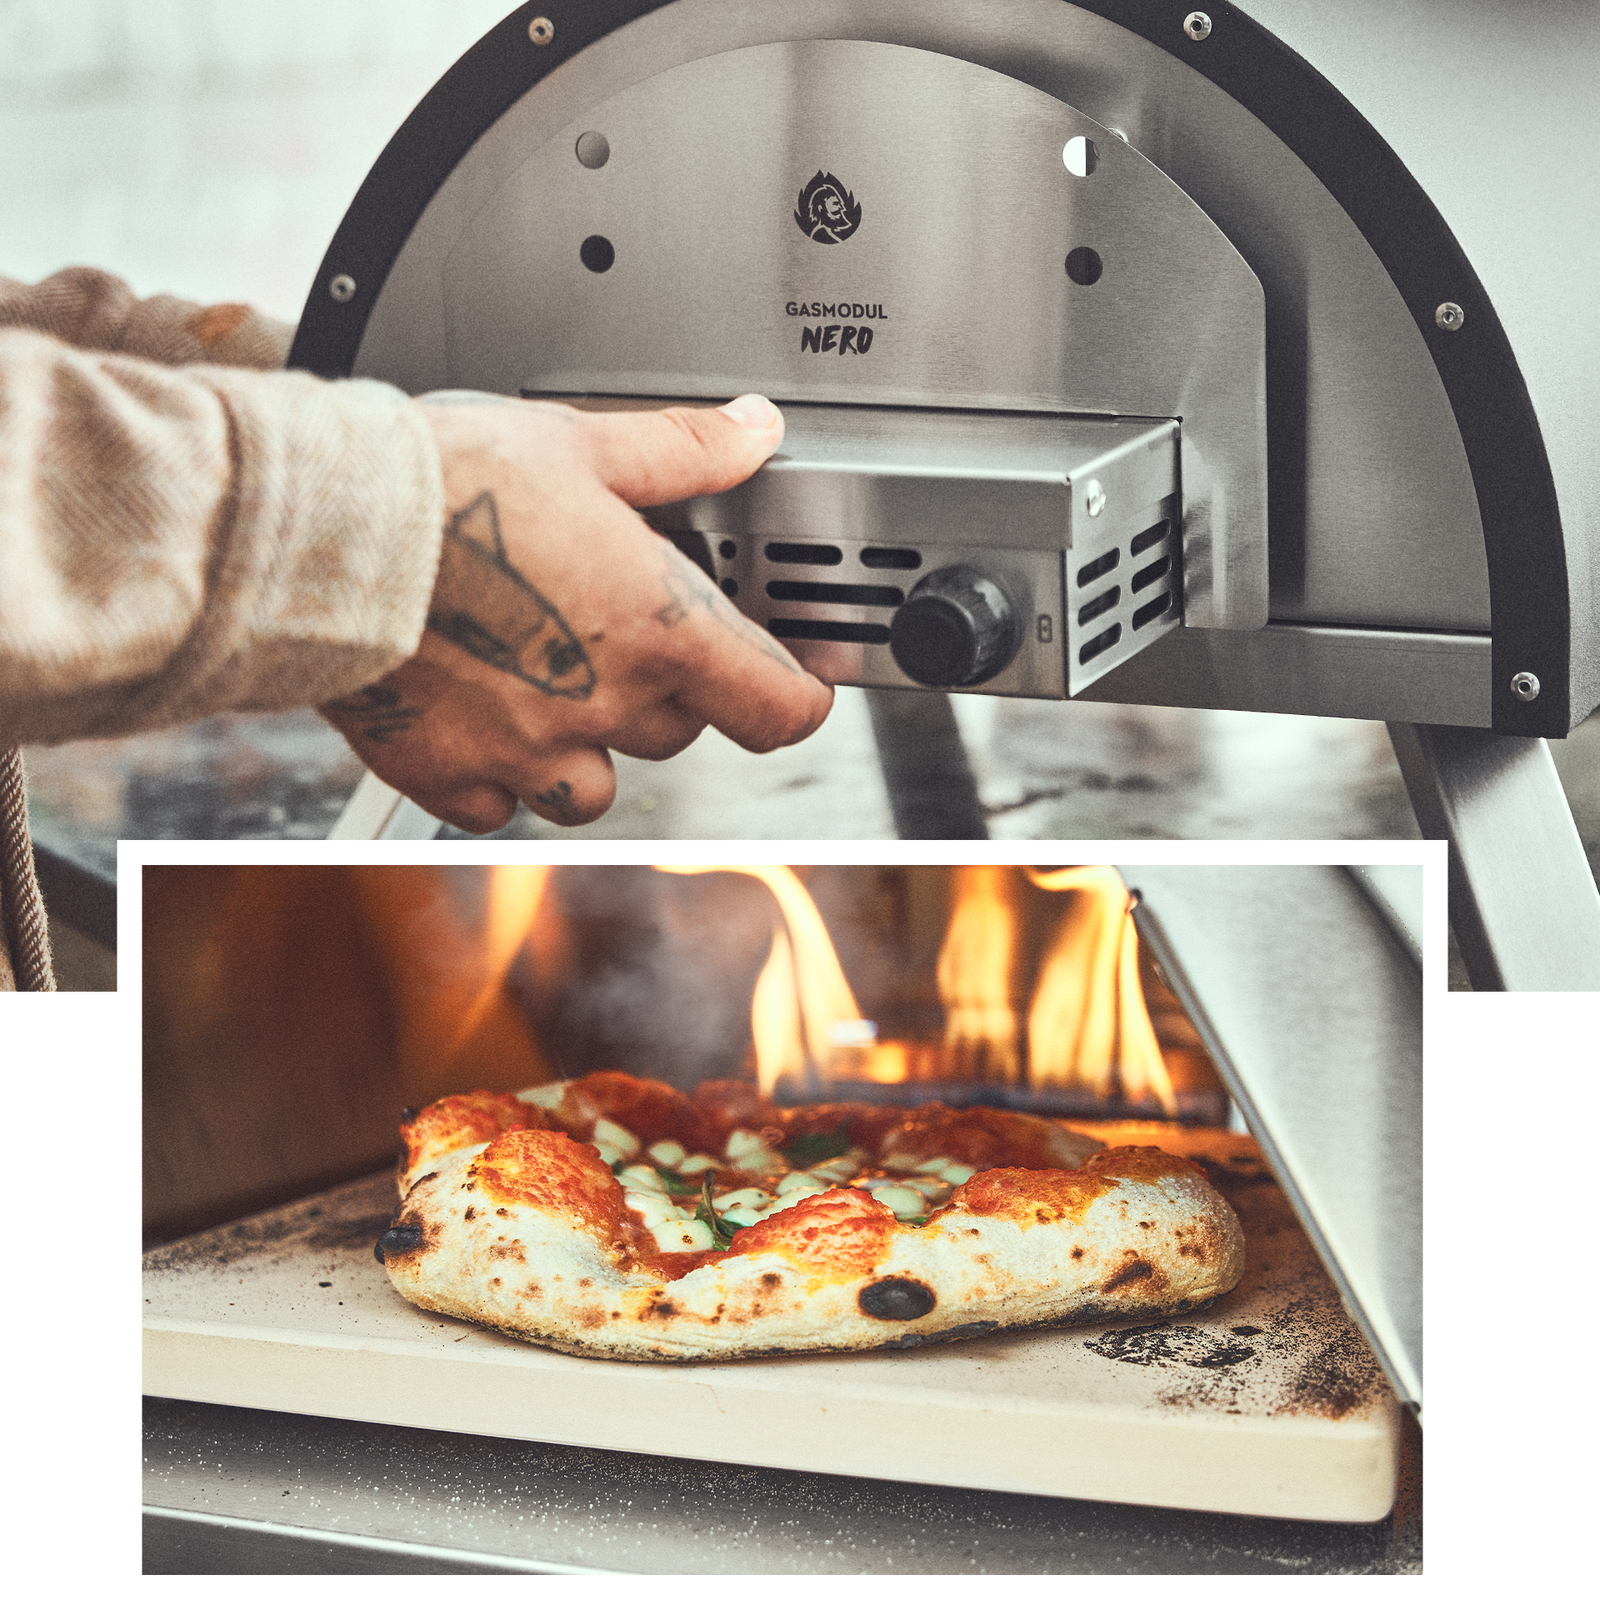 Gasmodul für NERO wird eingesetzt und Pizza im NERO gebacken